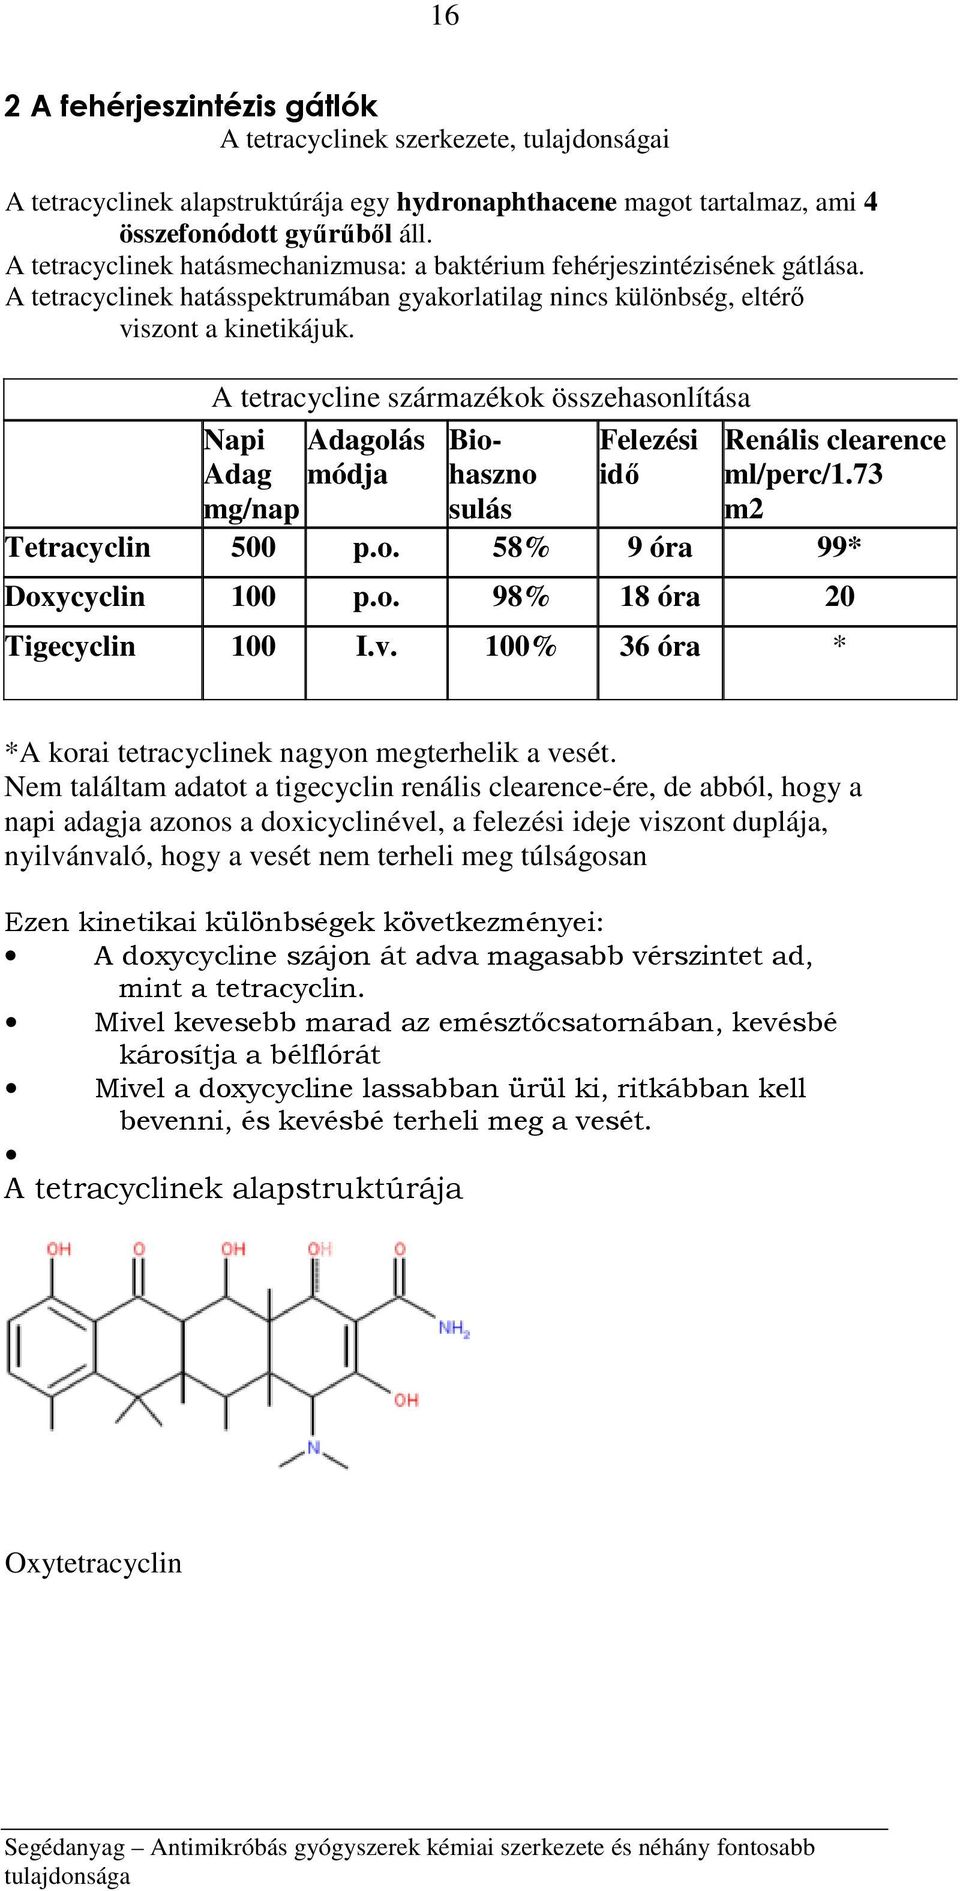 A tetracycline származékok összehasonlítása Napi Adagolás Adag módja mg/nap Biohaszno sulás Felezési idő Renális clearence ml/perc/1.73 m2 Tetracyclin 500 p.o. 58% 9 óra 99* Doxycyclin 100 p.o. 98% 18 óra 20 Tigecyclin 100 I.